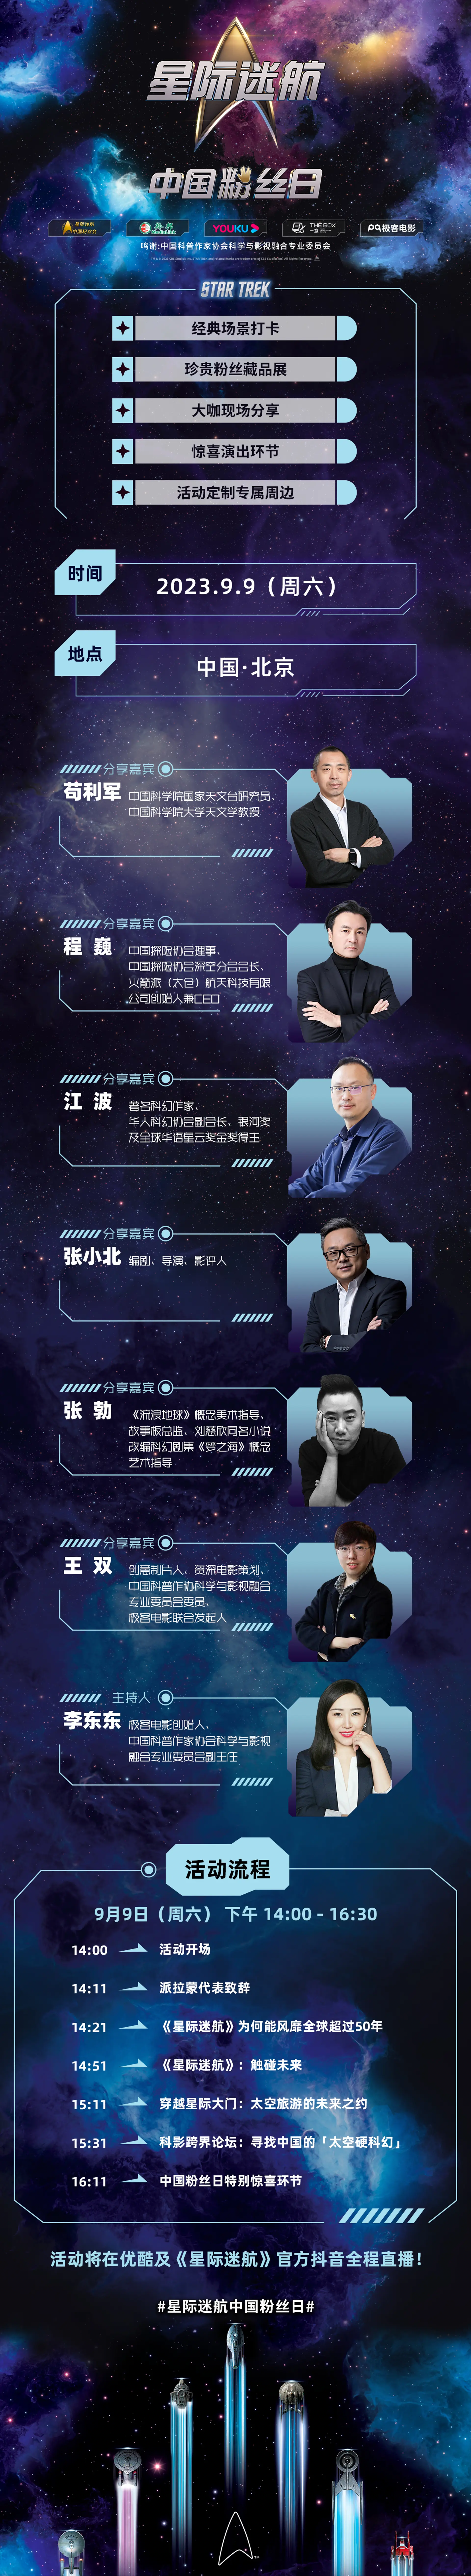 星际迷航中国粉丝日活动流程